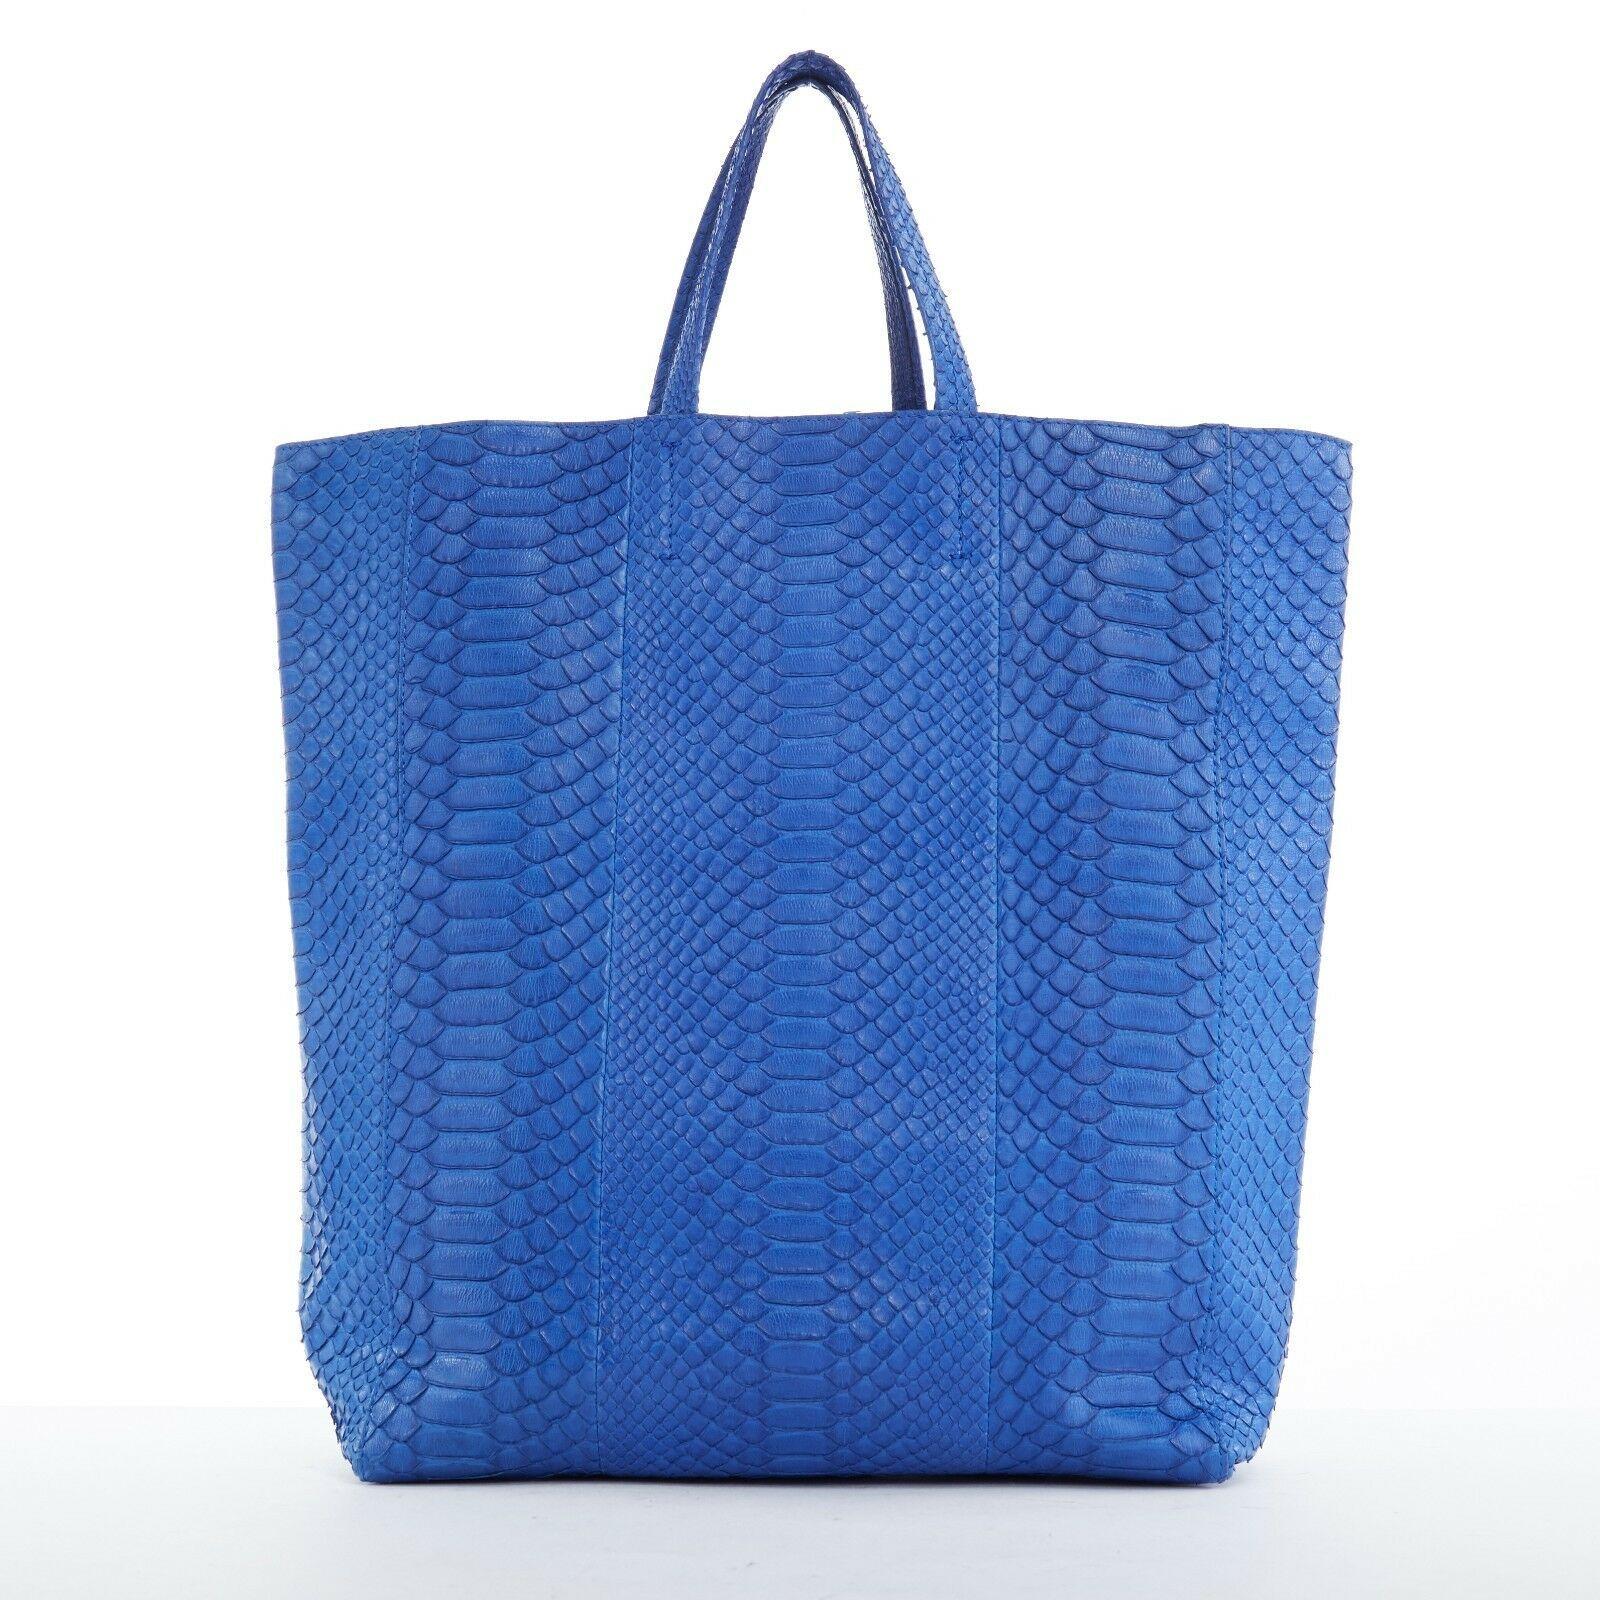 Women's CELINE PHOEBE PHILO Cabas cobalt blue python leather verticle tote shopper bag